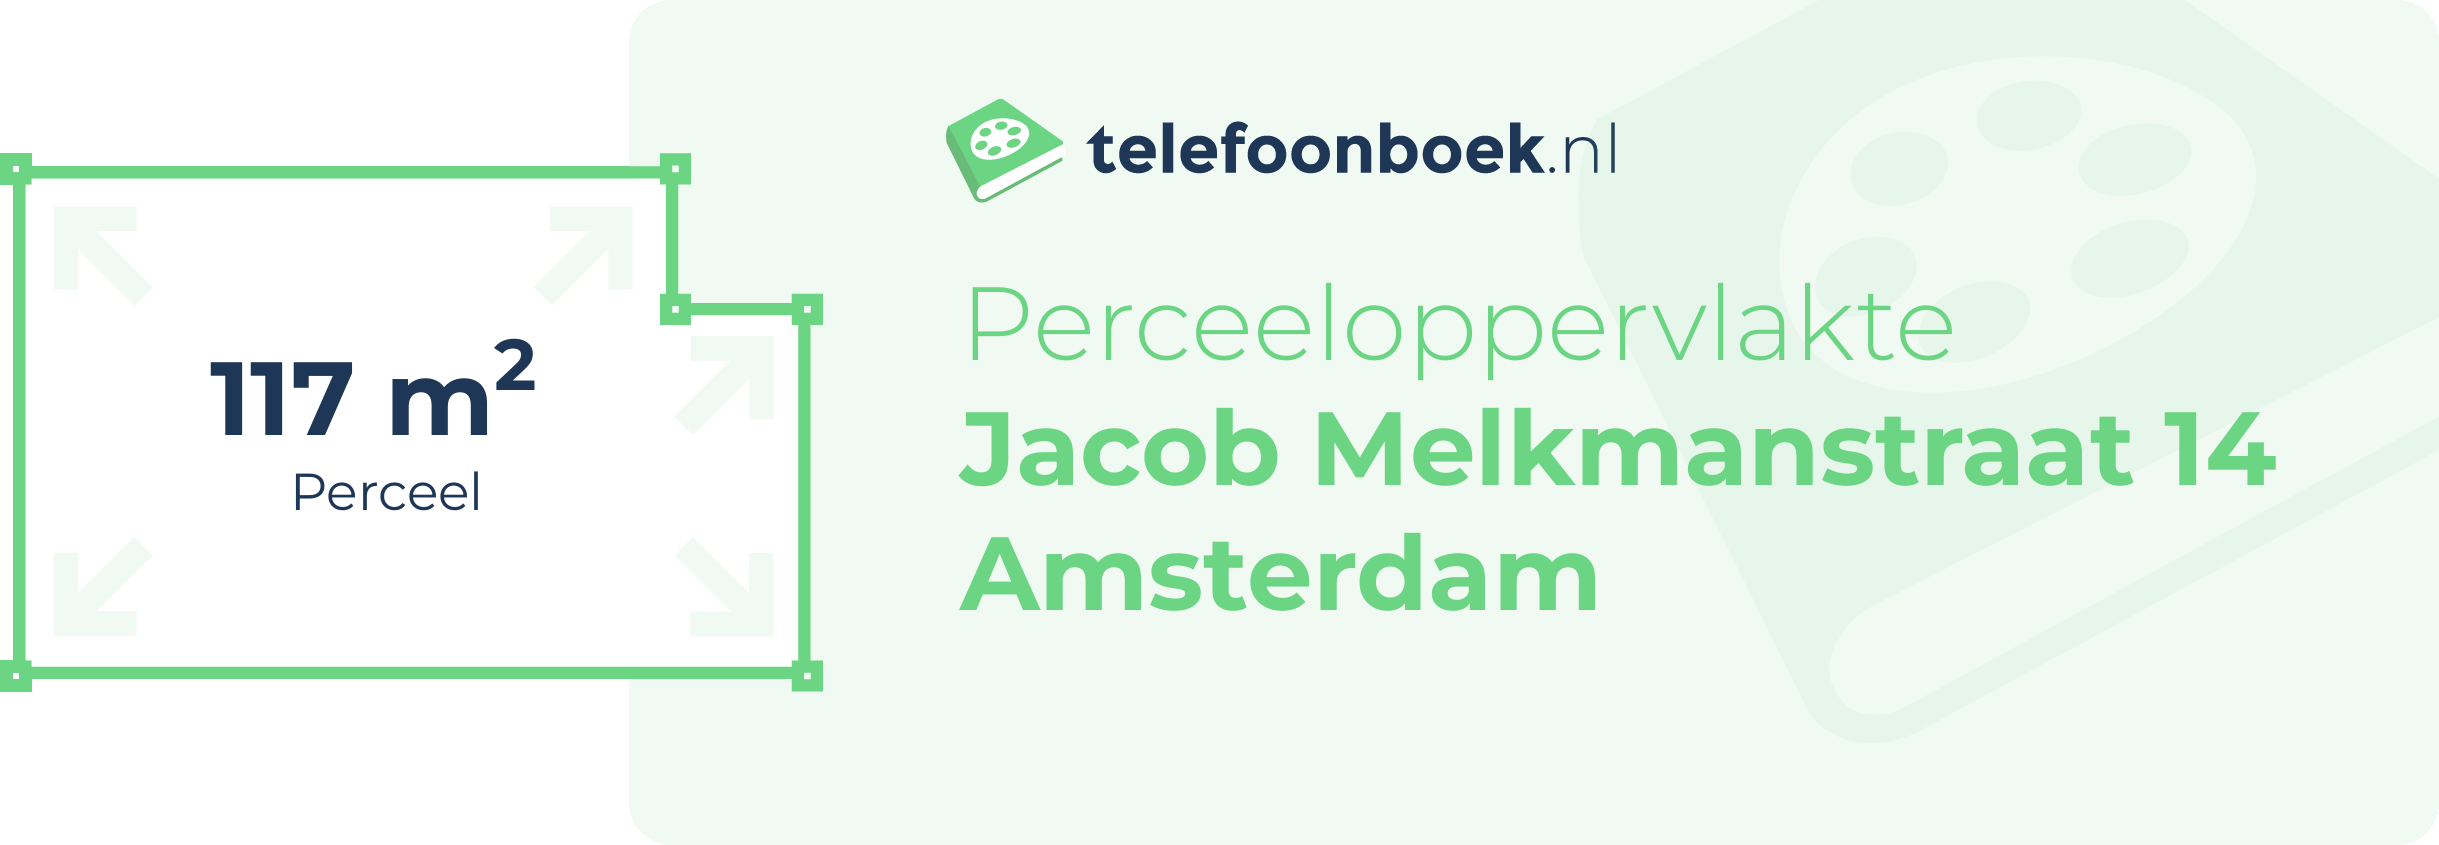 Perceeloppervlakte Jacob Melkmanstraat 14 Amsterdam